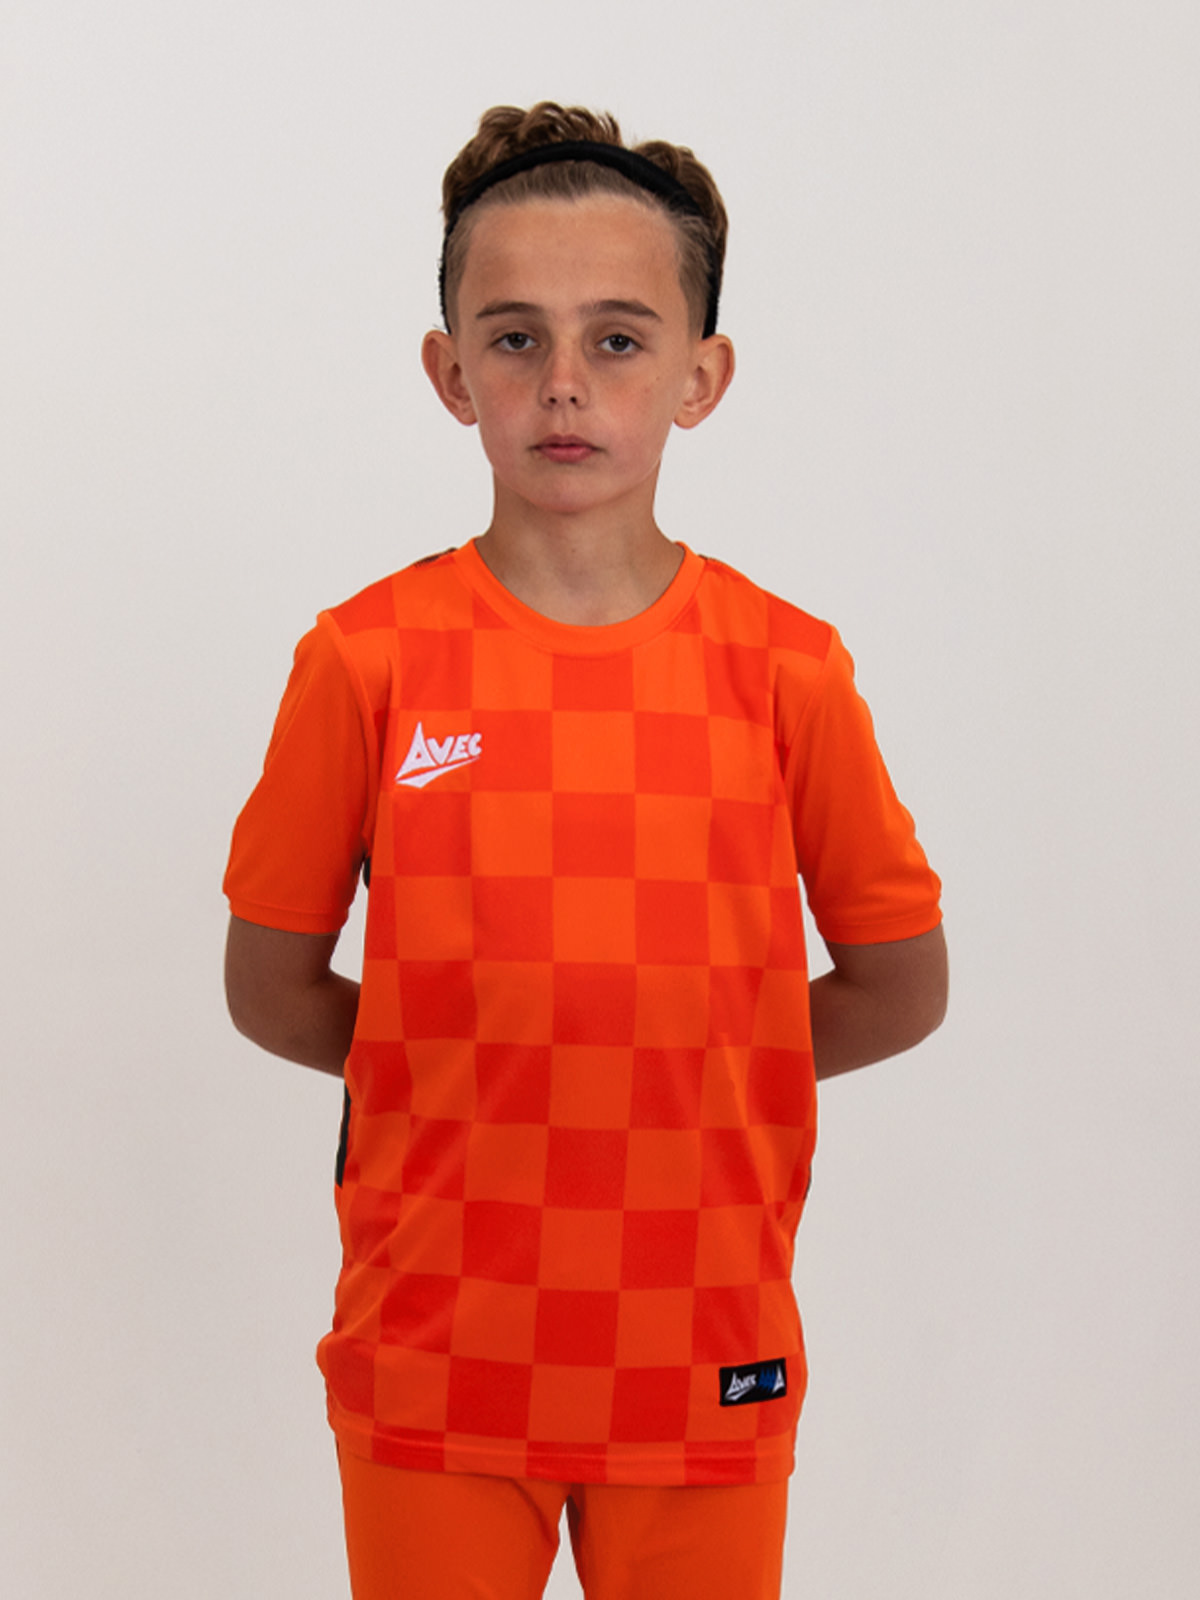 an orange children's football shirt